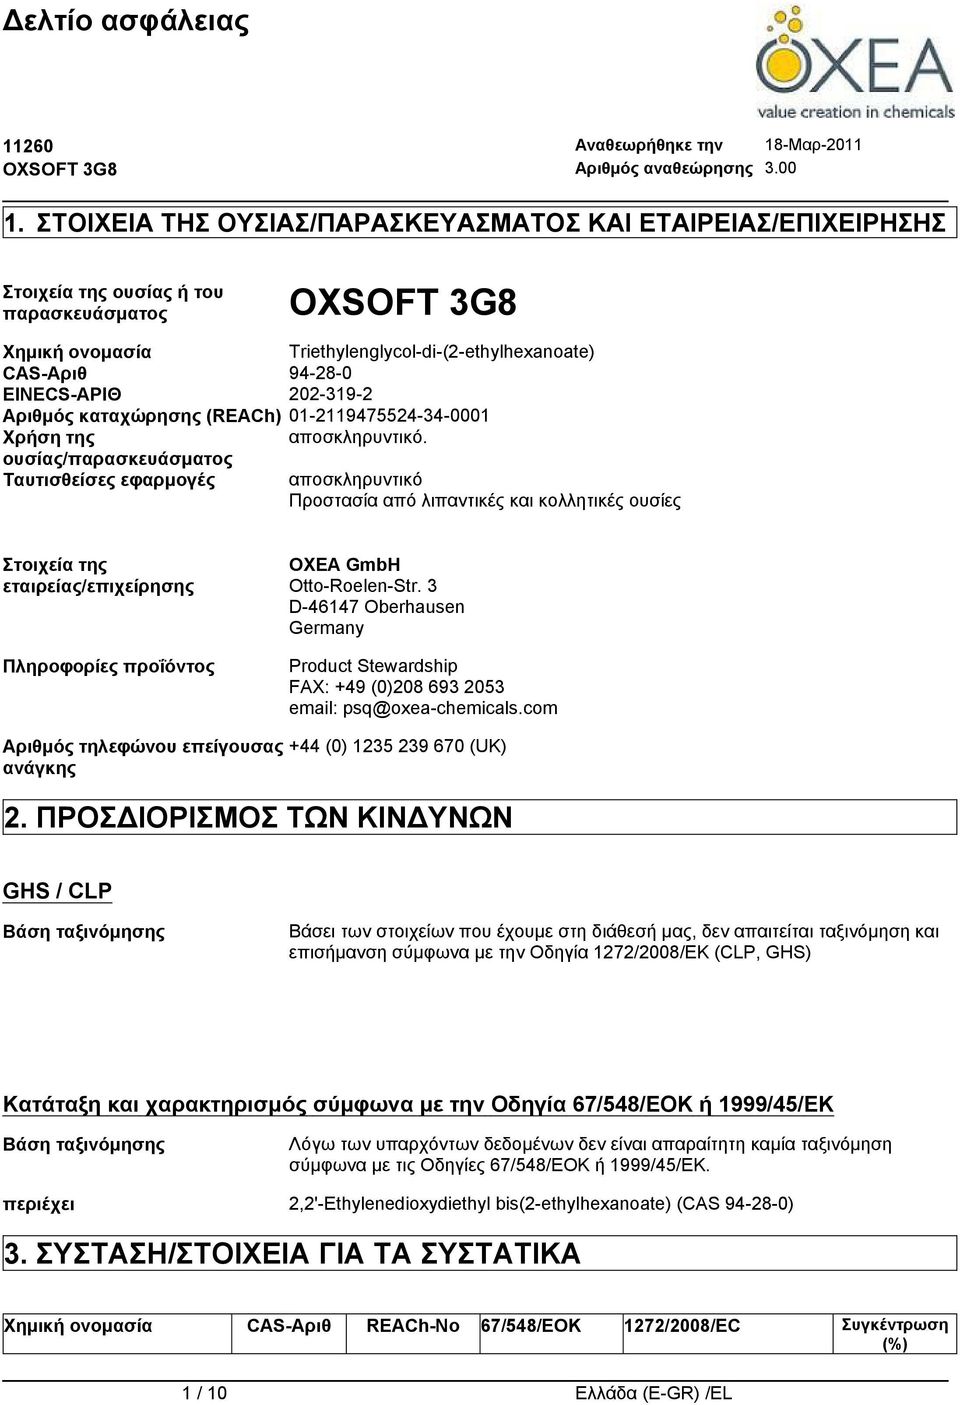 ουσίας/παρασκευάσματος Ταυτισθείσες εφαρμογές αποσκληρυντικό Προστασία από λιπαντικές και κολλητικές ουσίες Στοιχεία της εταιρείας/επιχείρησης Πληροφορίες προΐόντος OXEA GmbH Otto-Roelen-Str.